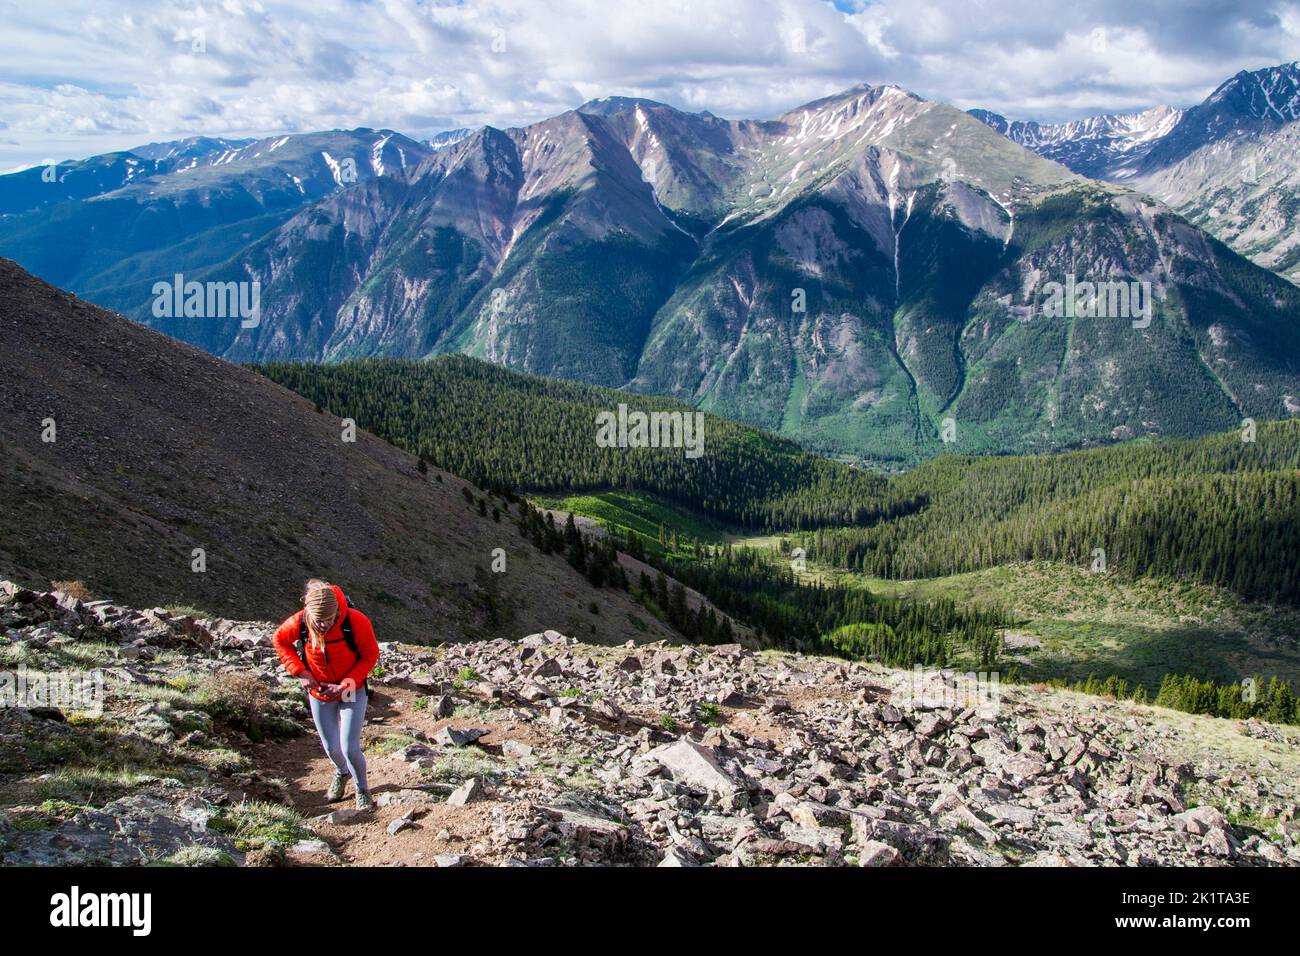 Una donna sale il ripido sentiero per passeggiate su un terreno roccioso con spettacolari vedute delle montagne dietro al Monte Elbert in Colorado USA Foto Stock